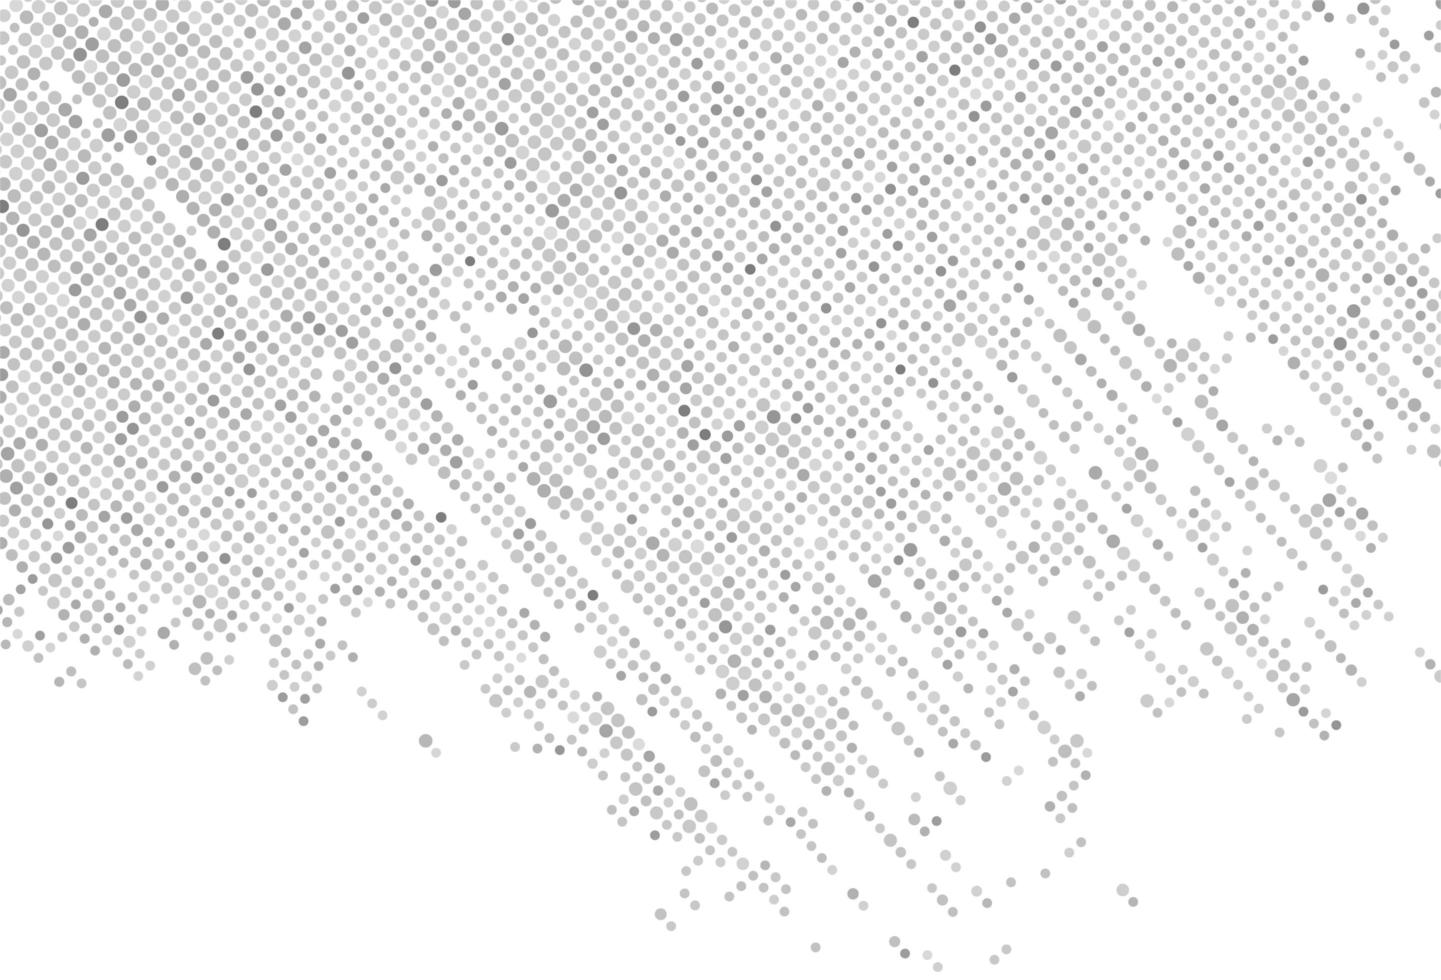 abstrakt grå prickade penseldragmönster vektor